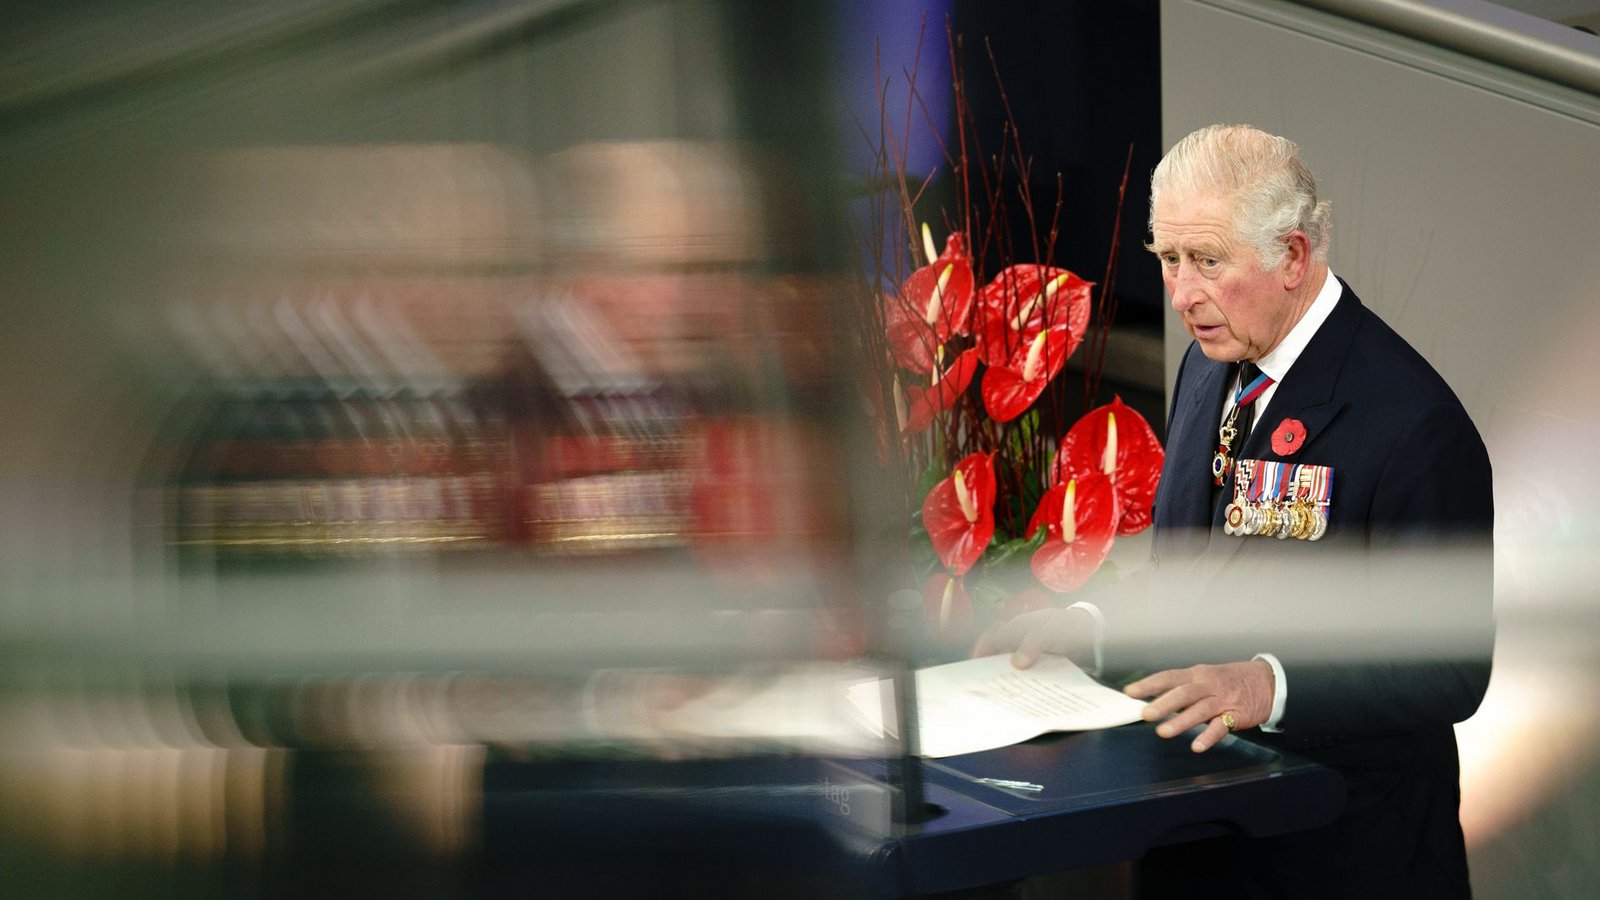 Zum Volkstrauertag hielt Prinz Charles eine Rede im deutschen Bundestag.Foto: dpa/Kay Nietfeld